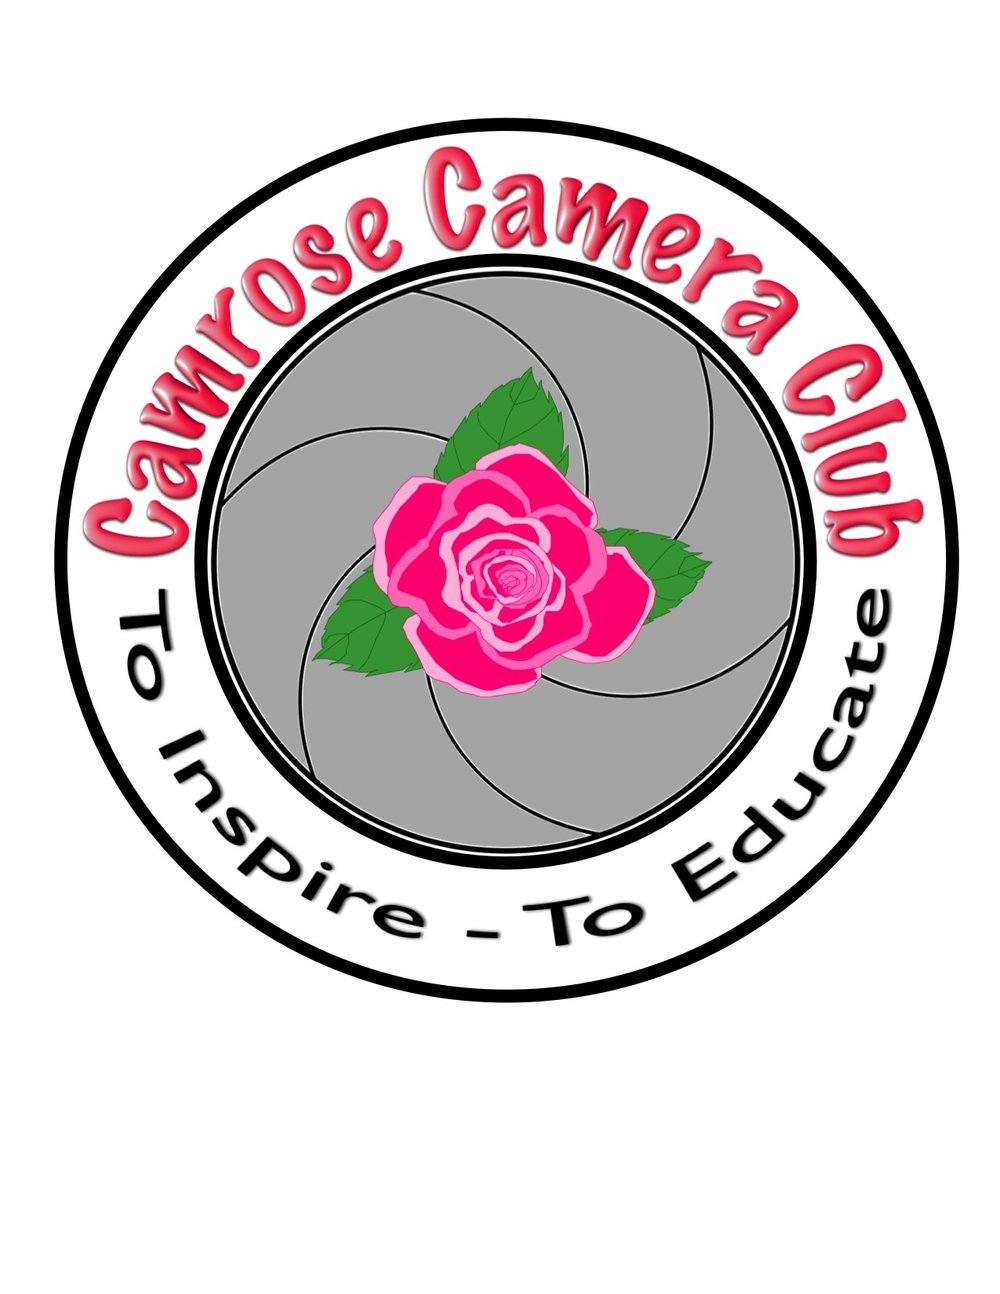 Camrose Camera Club